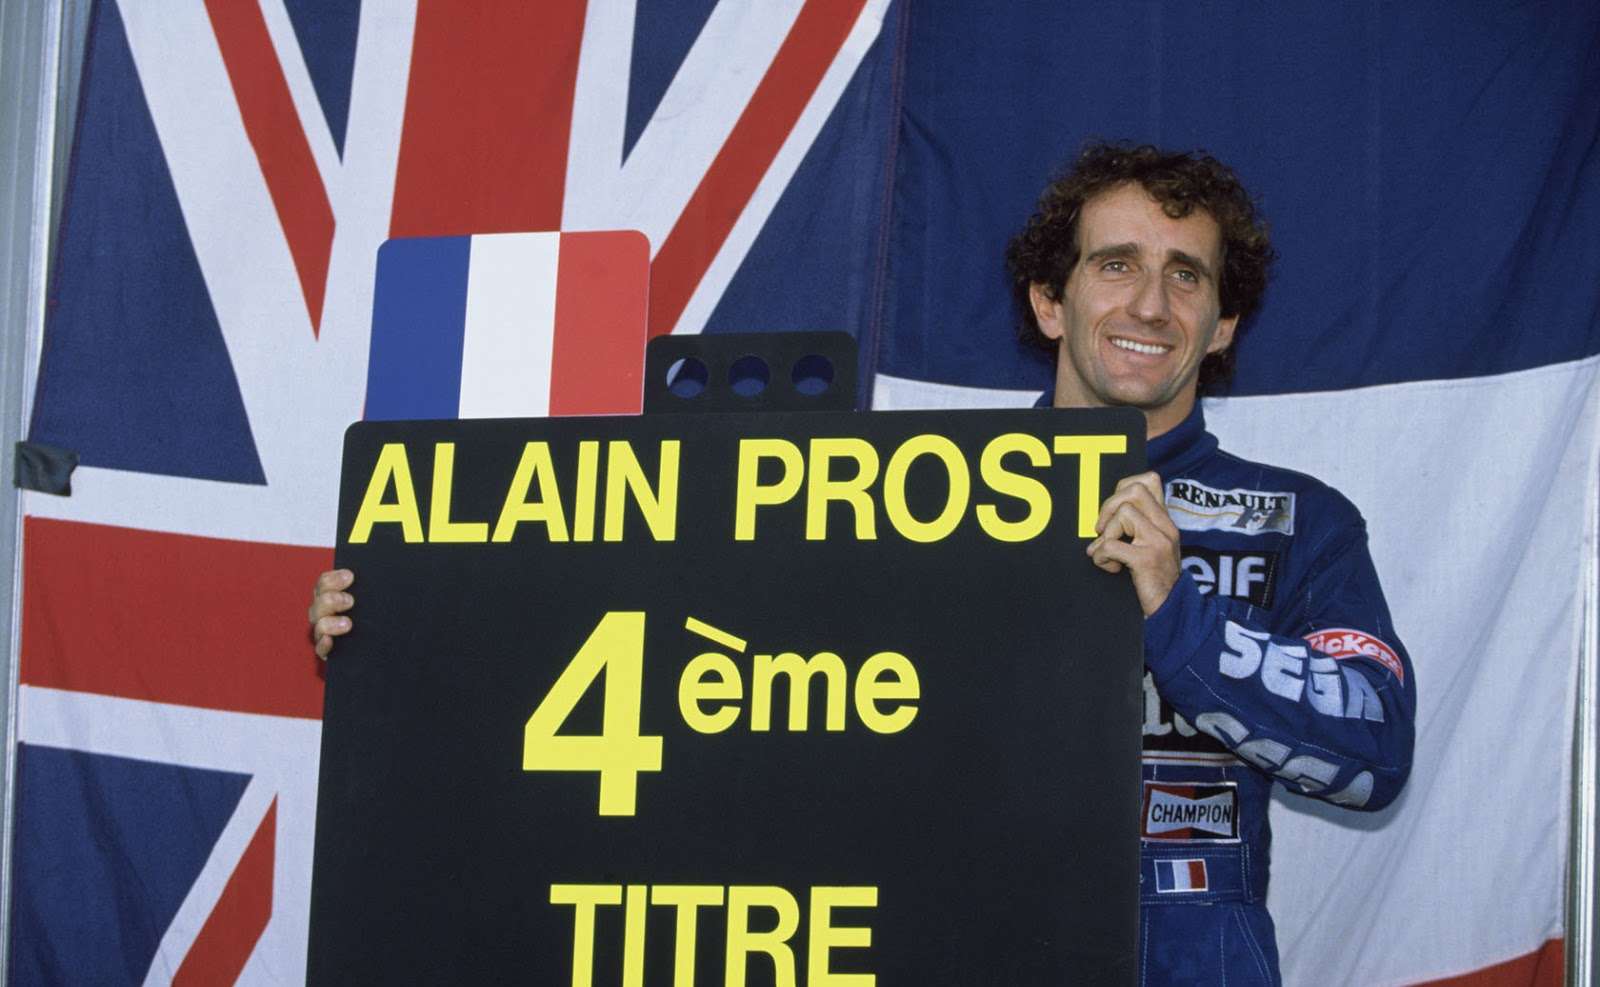 O francês correu na Fórmula 1 até o fim da temporada 1993. Foram quatro títulos mundiais e 41 vitórias - a última no GP da Alemanha daquele ano -, estabelecendo-se como recordista isolado